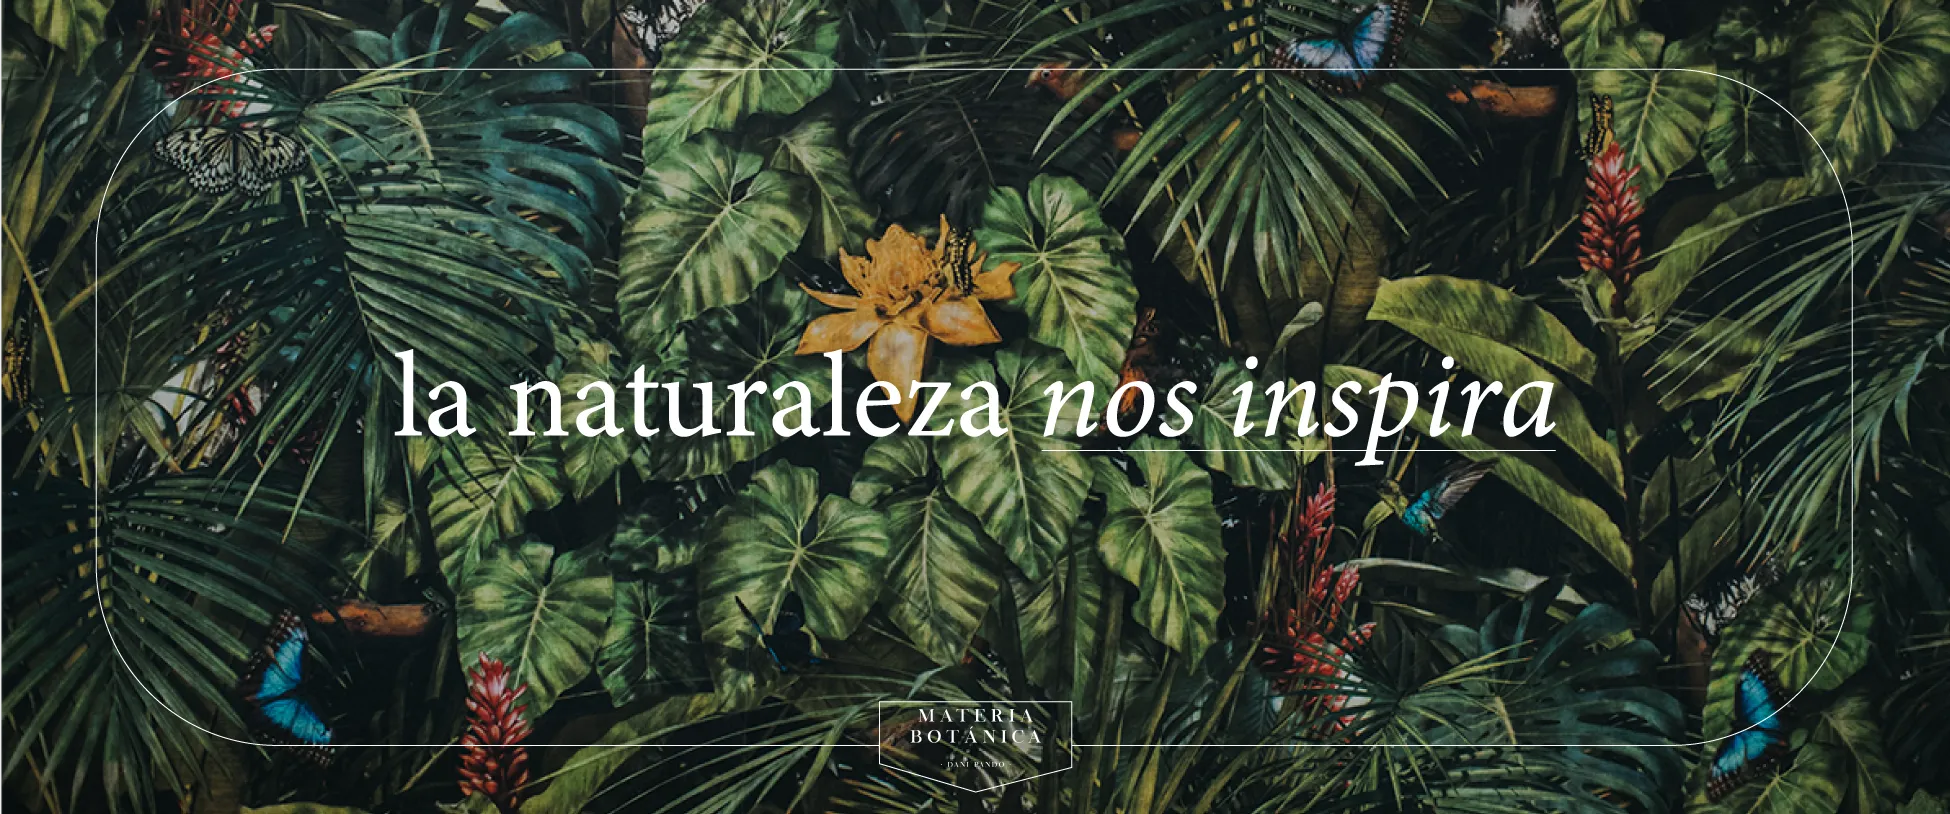 Materia Botánica, la naturaleza nos inspira